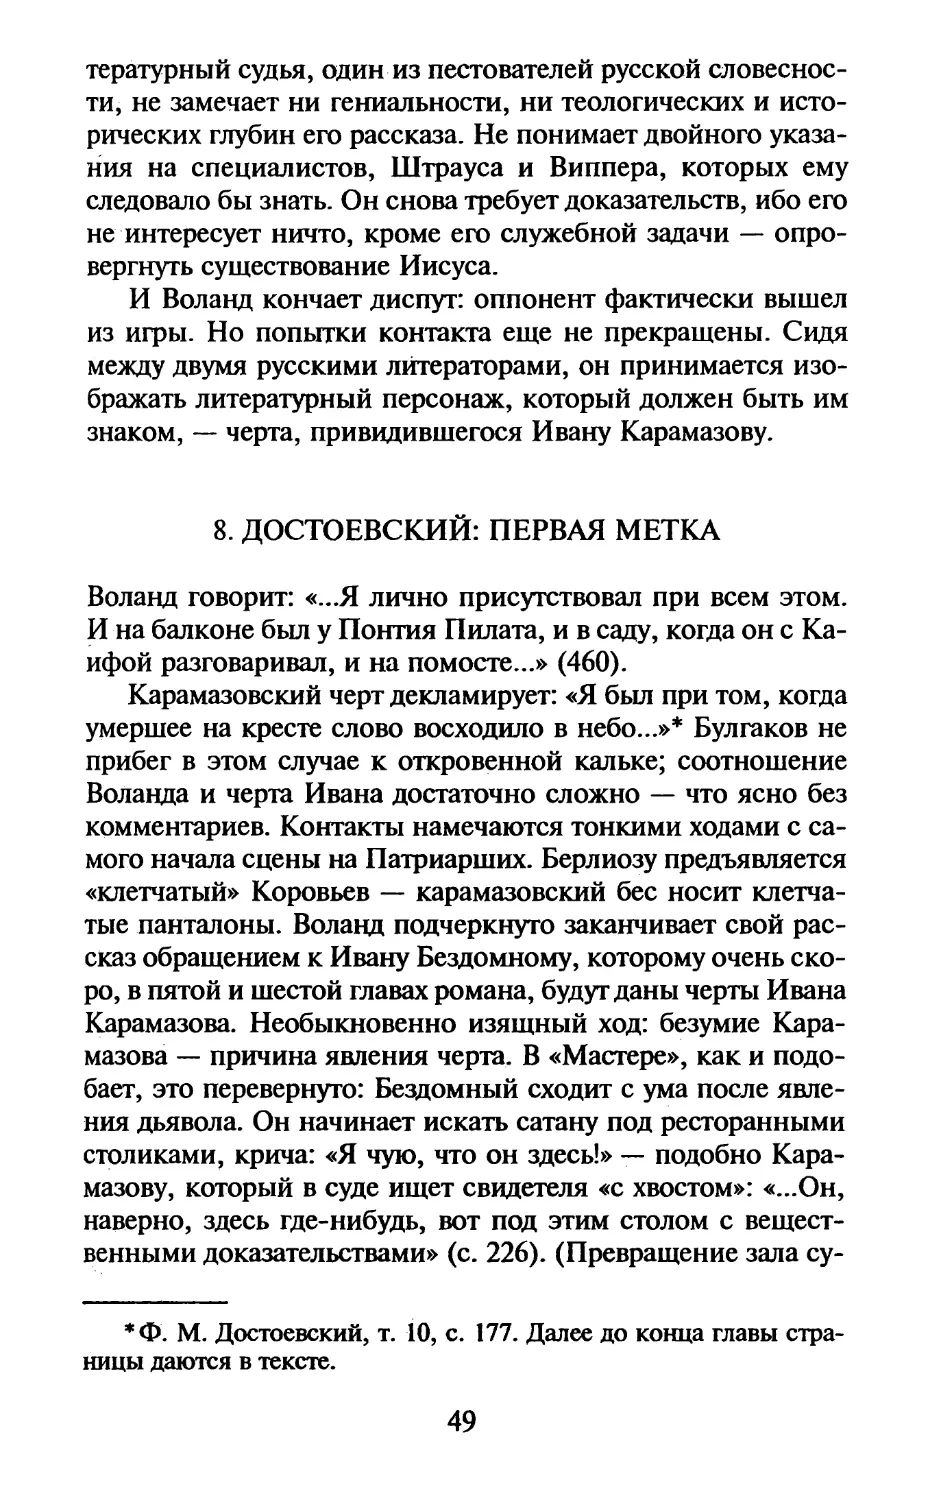 8. Достоевский